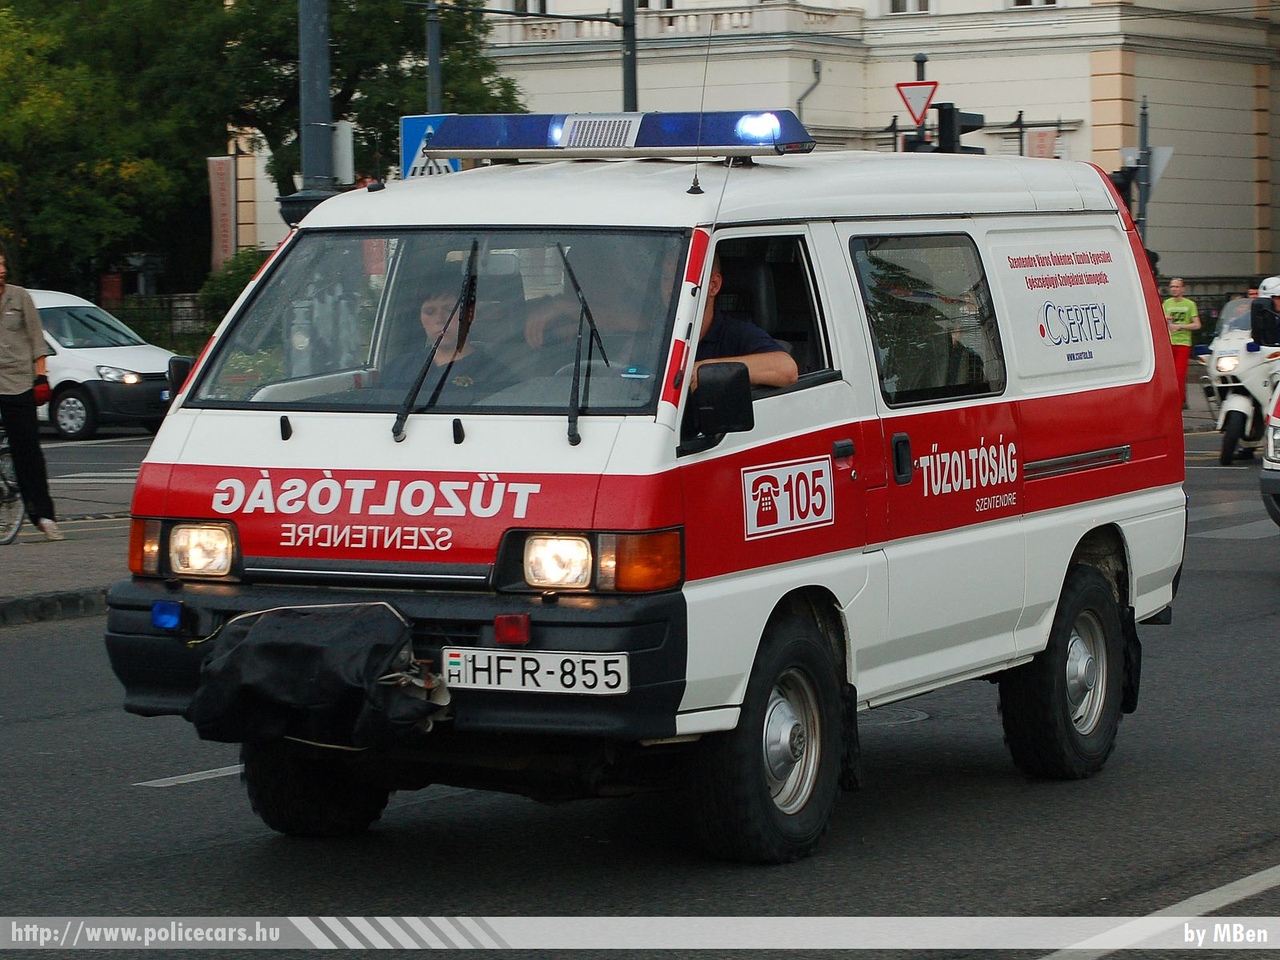 Mitsubishi L300, Szentendre Város Önkéntes Tûzoltó Egyesülete, fotó: MBen
Keywords: tûzoltóautó tûzoltóság tûzoltó magyar Magyarország ÖTE fire firetruck Hungary hungarian HFR-855